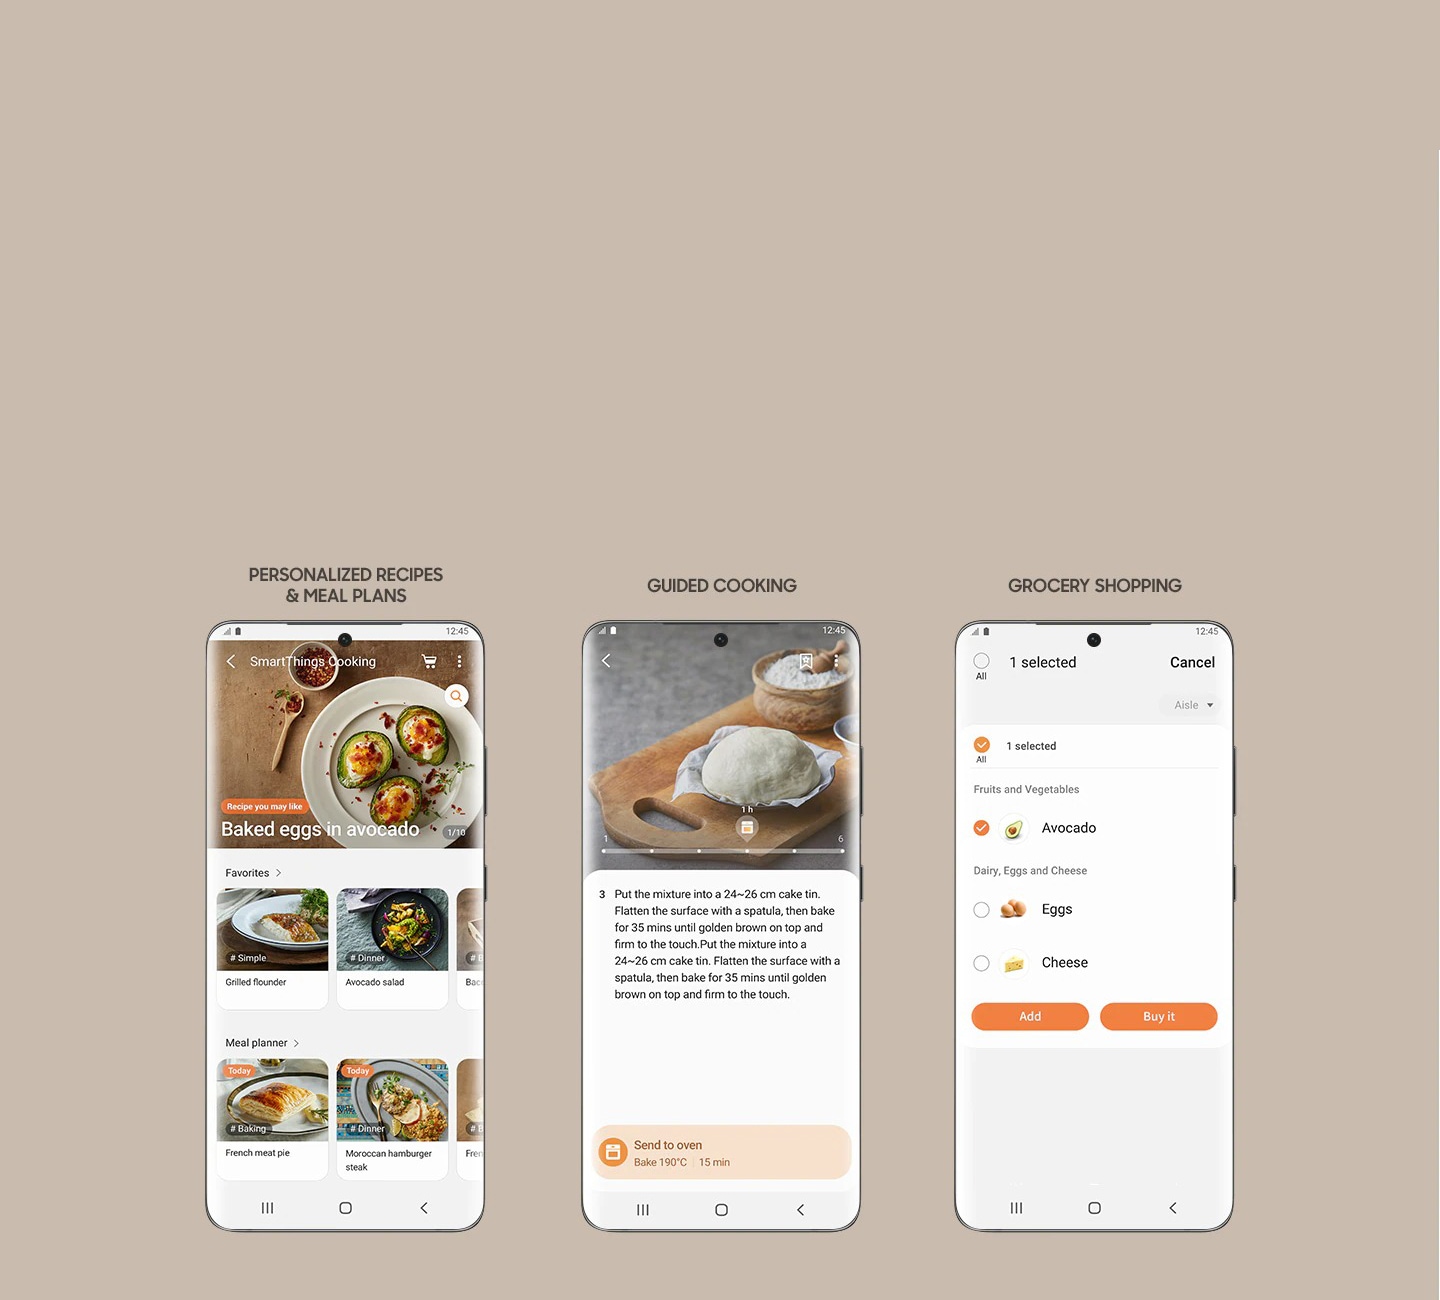 Mostra 3 schermate dello smartphone dall'app SmartThings Cooking, che ti consente di accedere a ricette e piani pasto personalizzati, visualizzare istruzioni di cottura guidate e creare una lista della spesa per acquistare gli ingredienti.